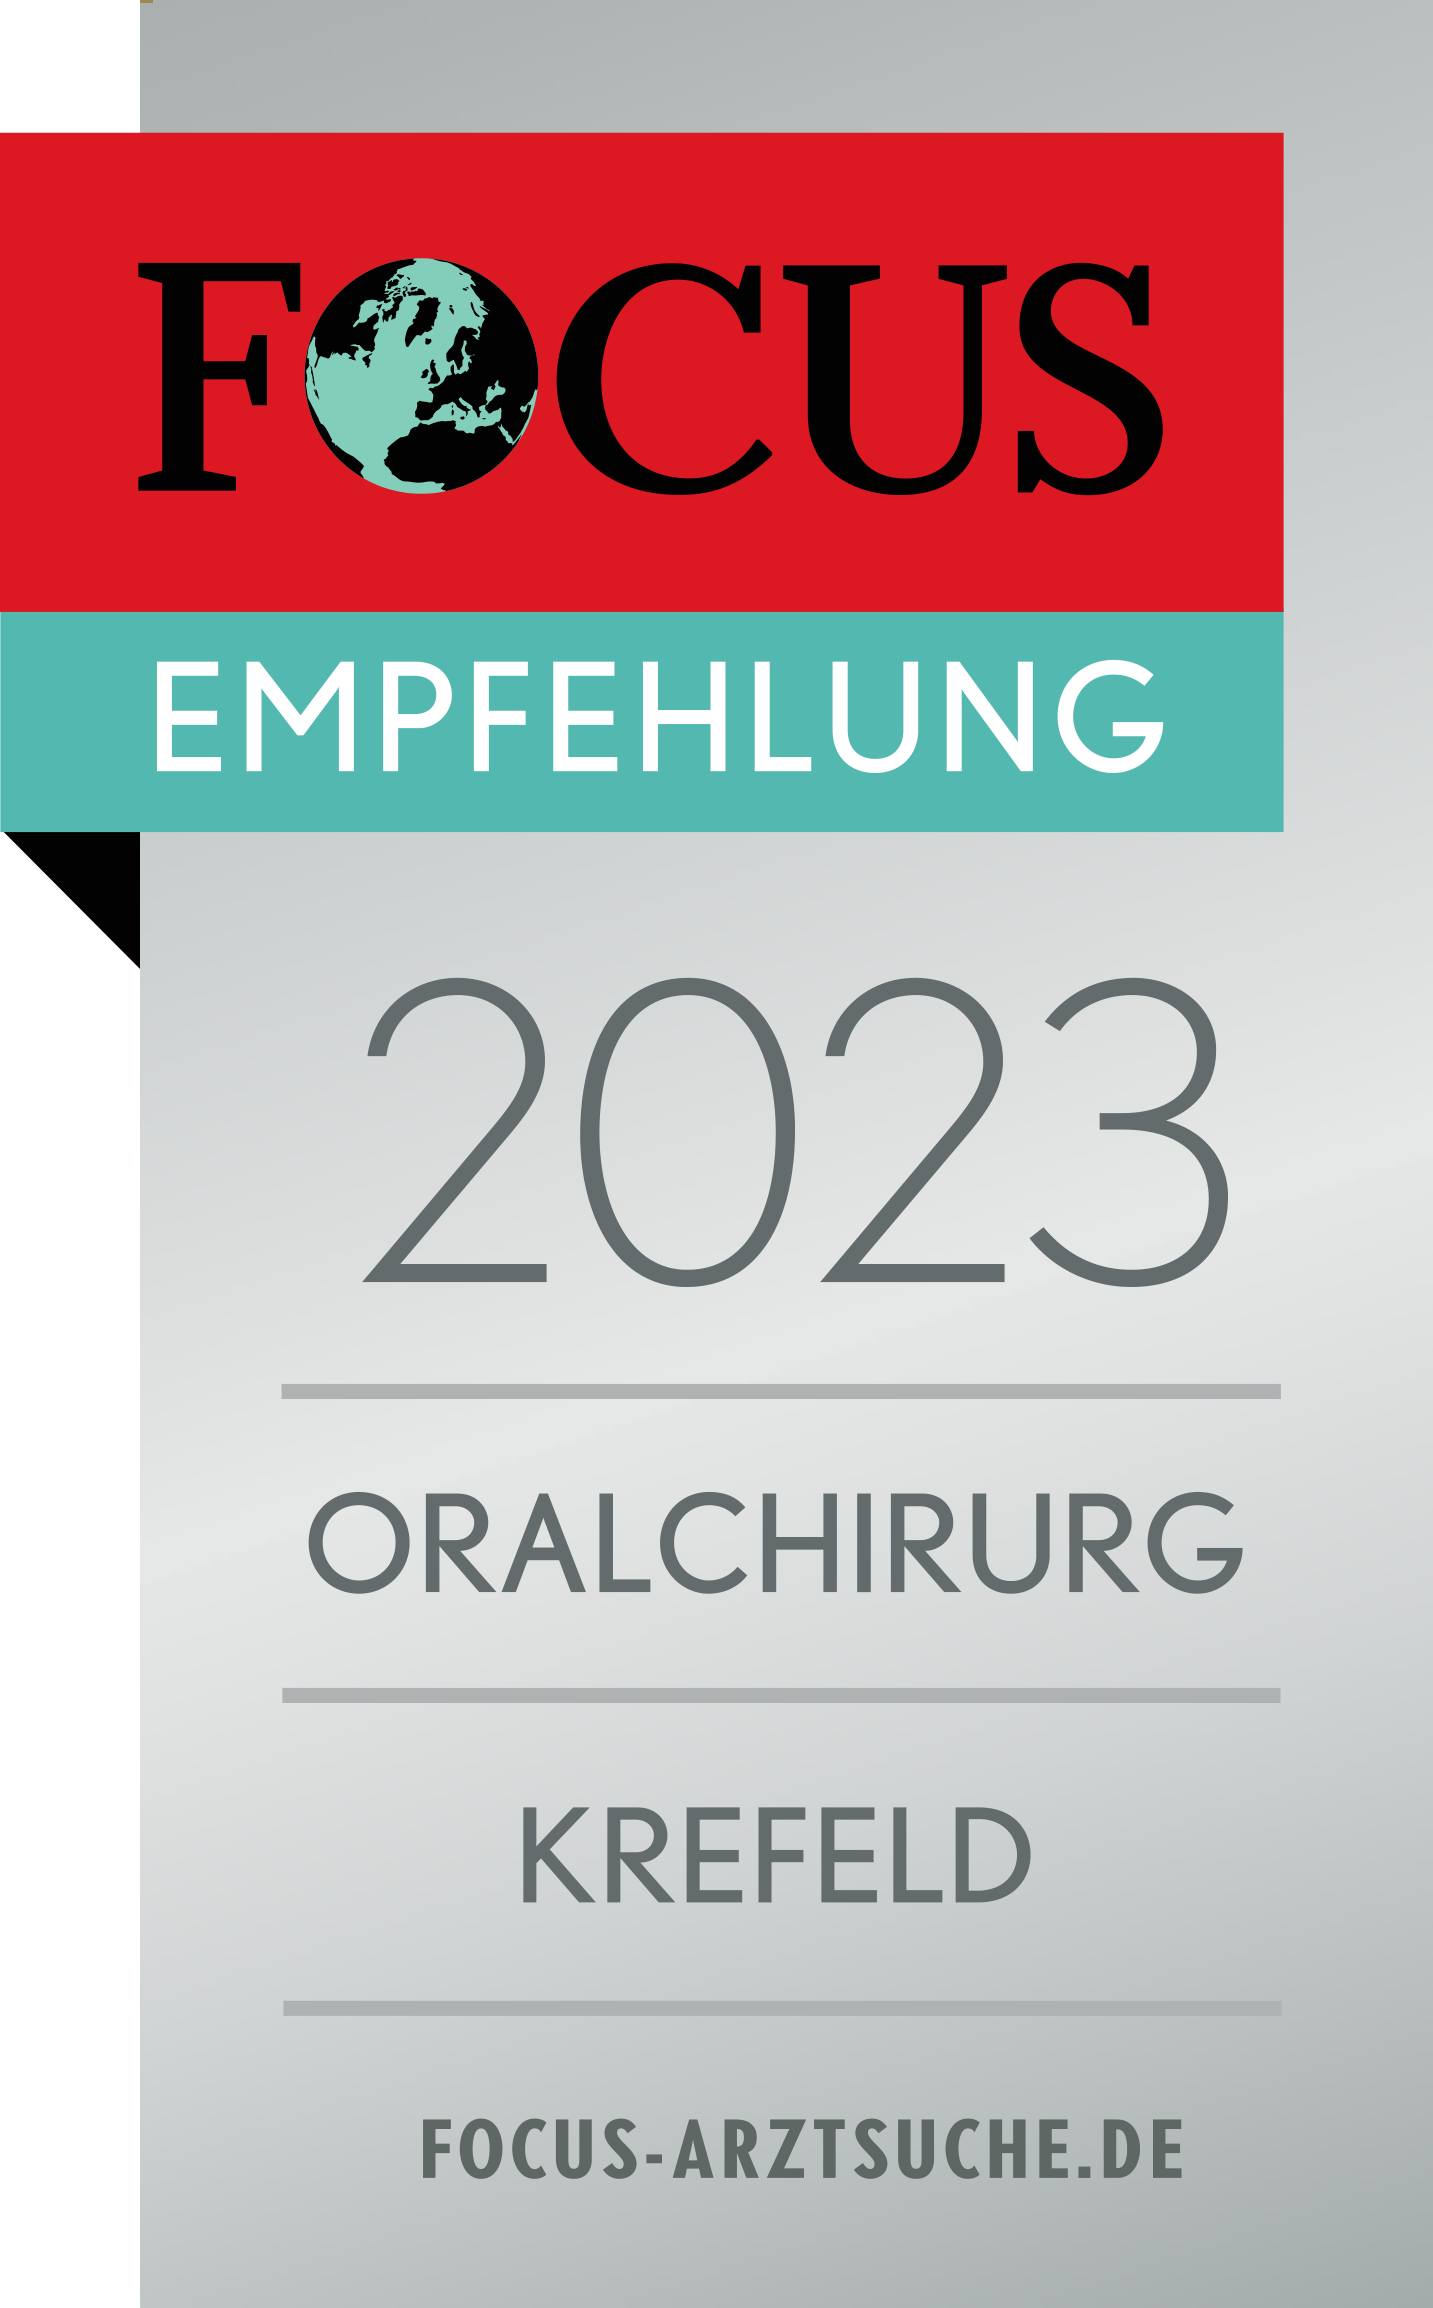 Focus Empfehlung 2023 Oralchirurg Krefeld